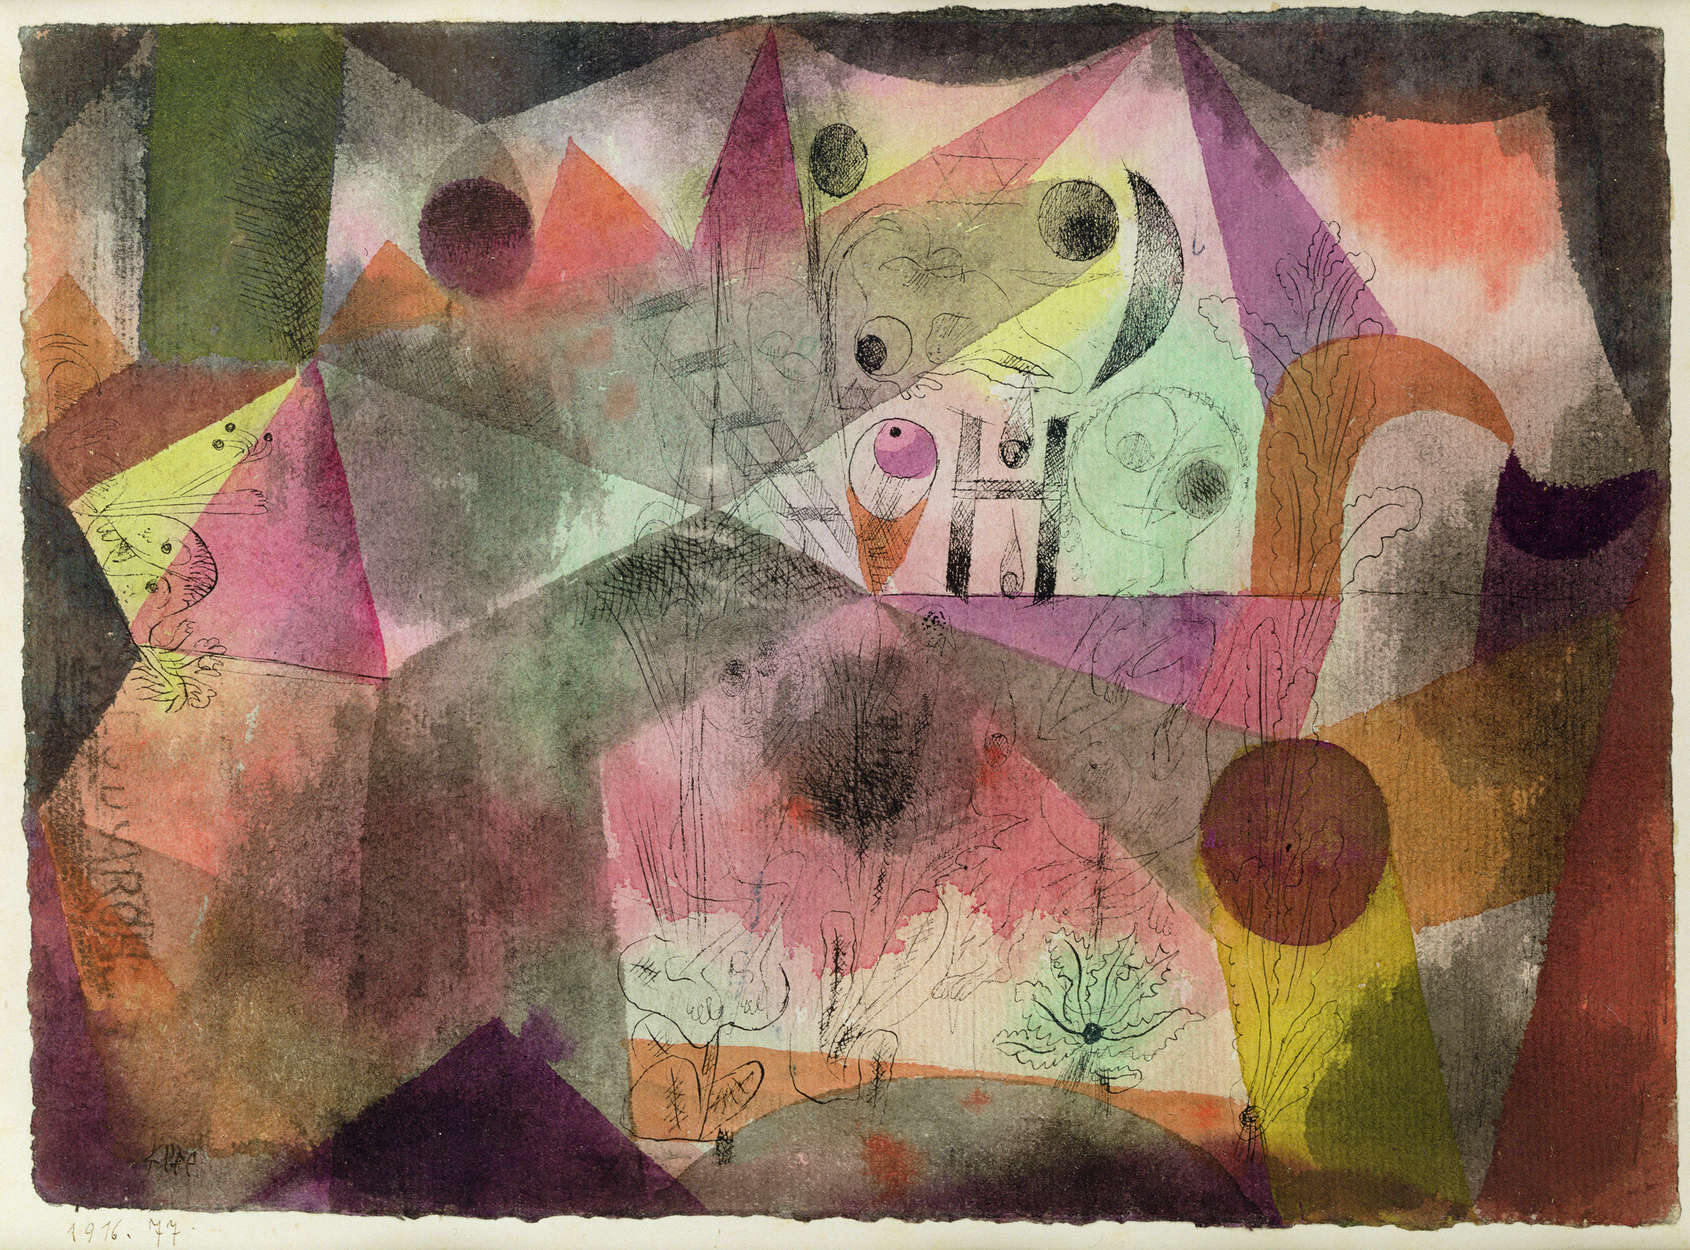             Fototapete "Mit dem H" von Paul Klee
        